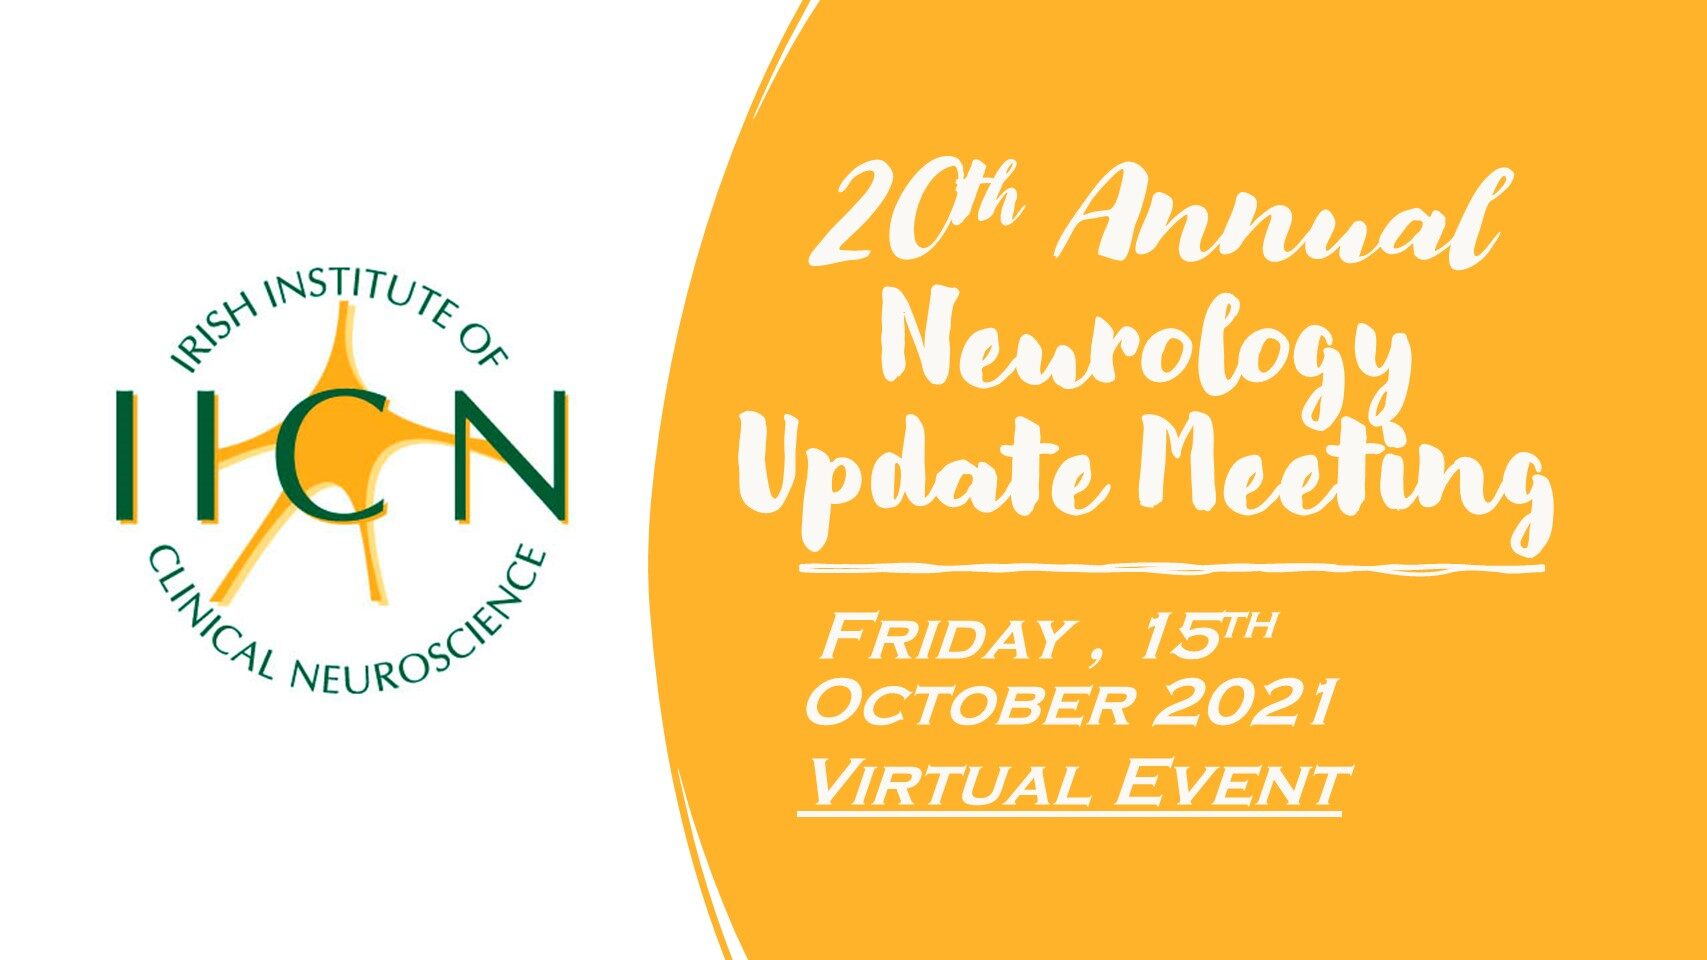 Neurology Update Meeting Friday, 15th October 2021